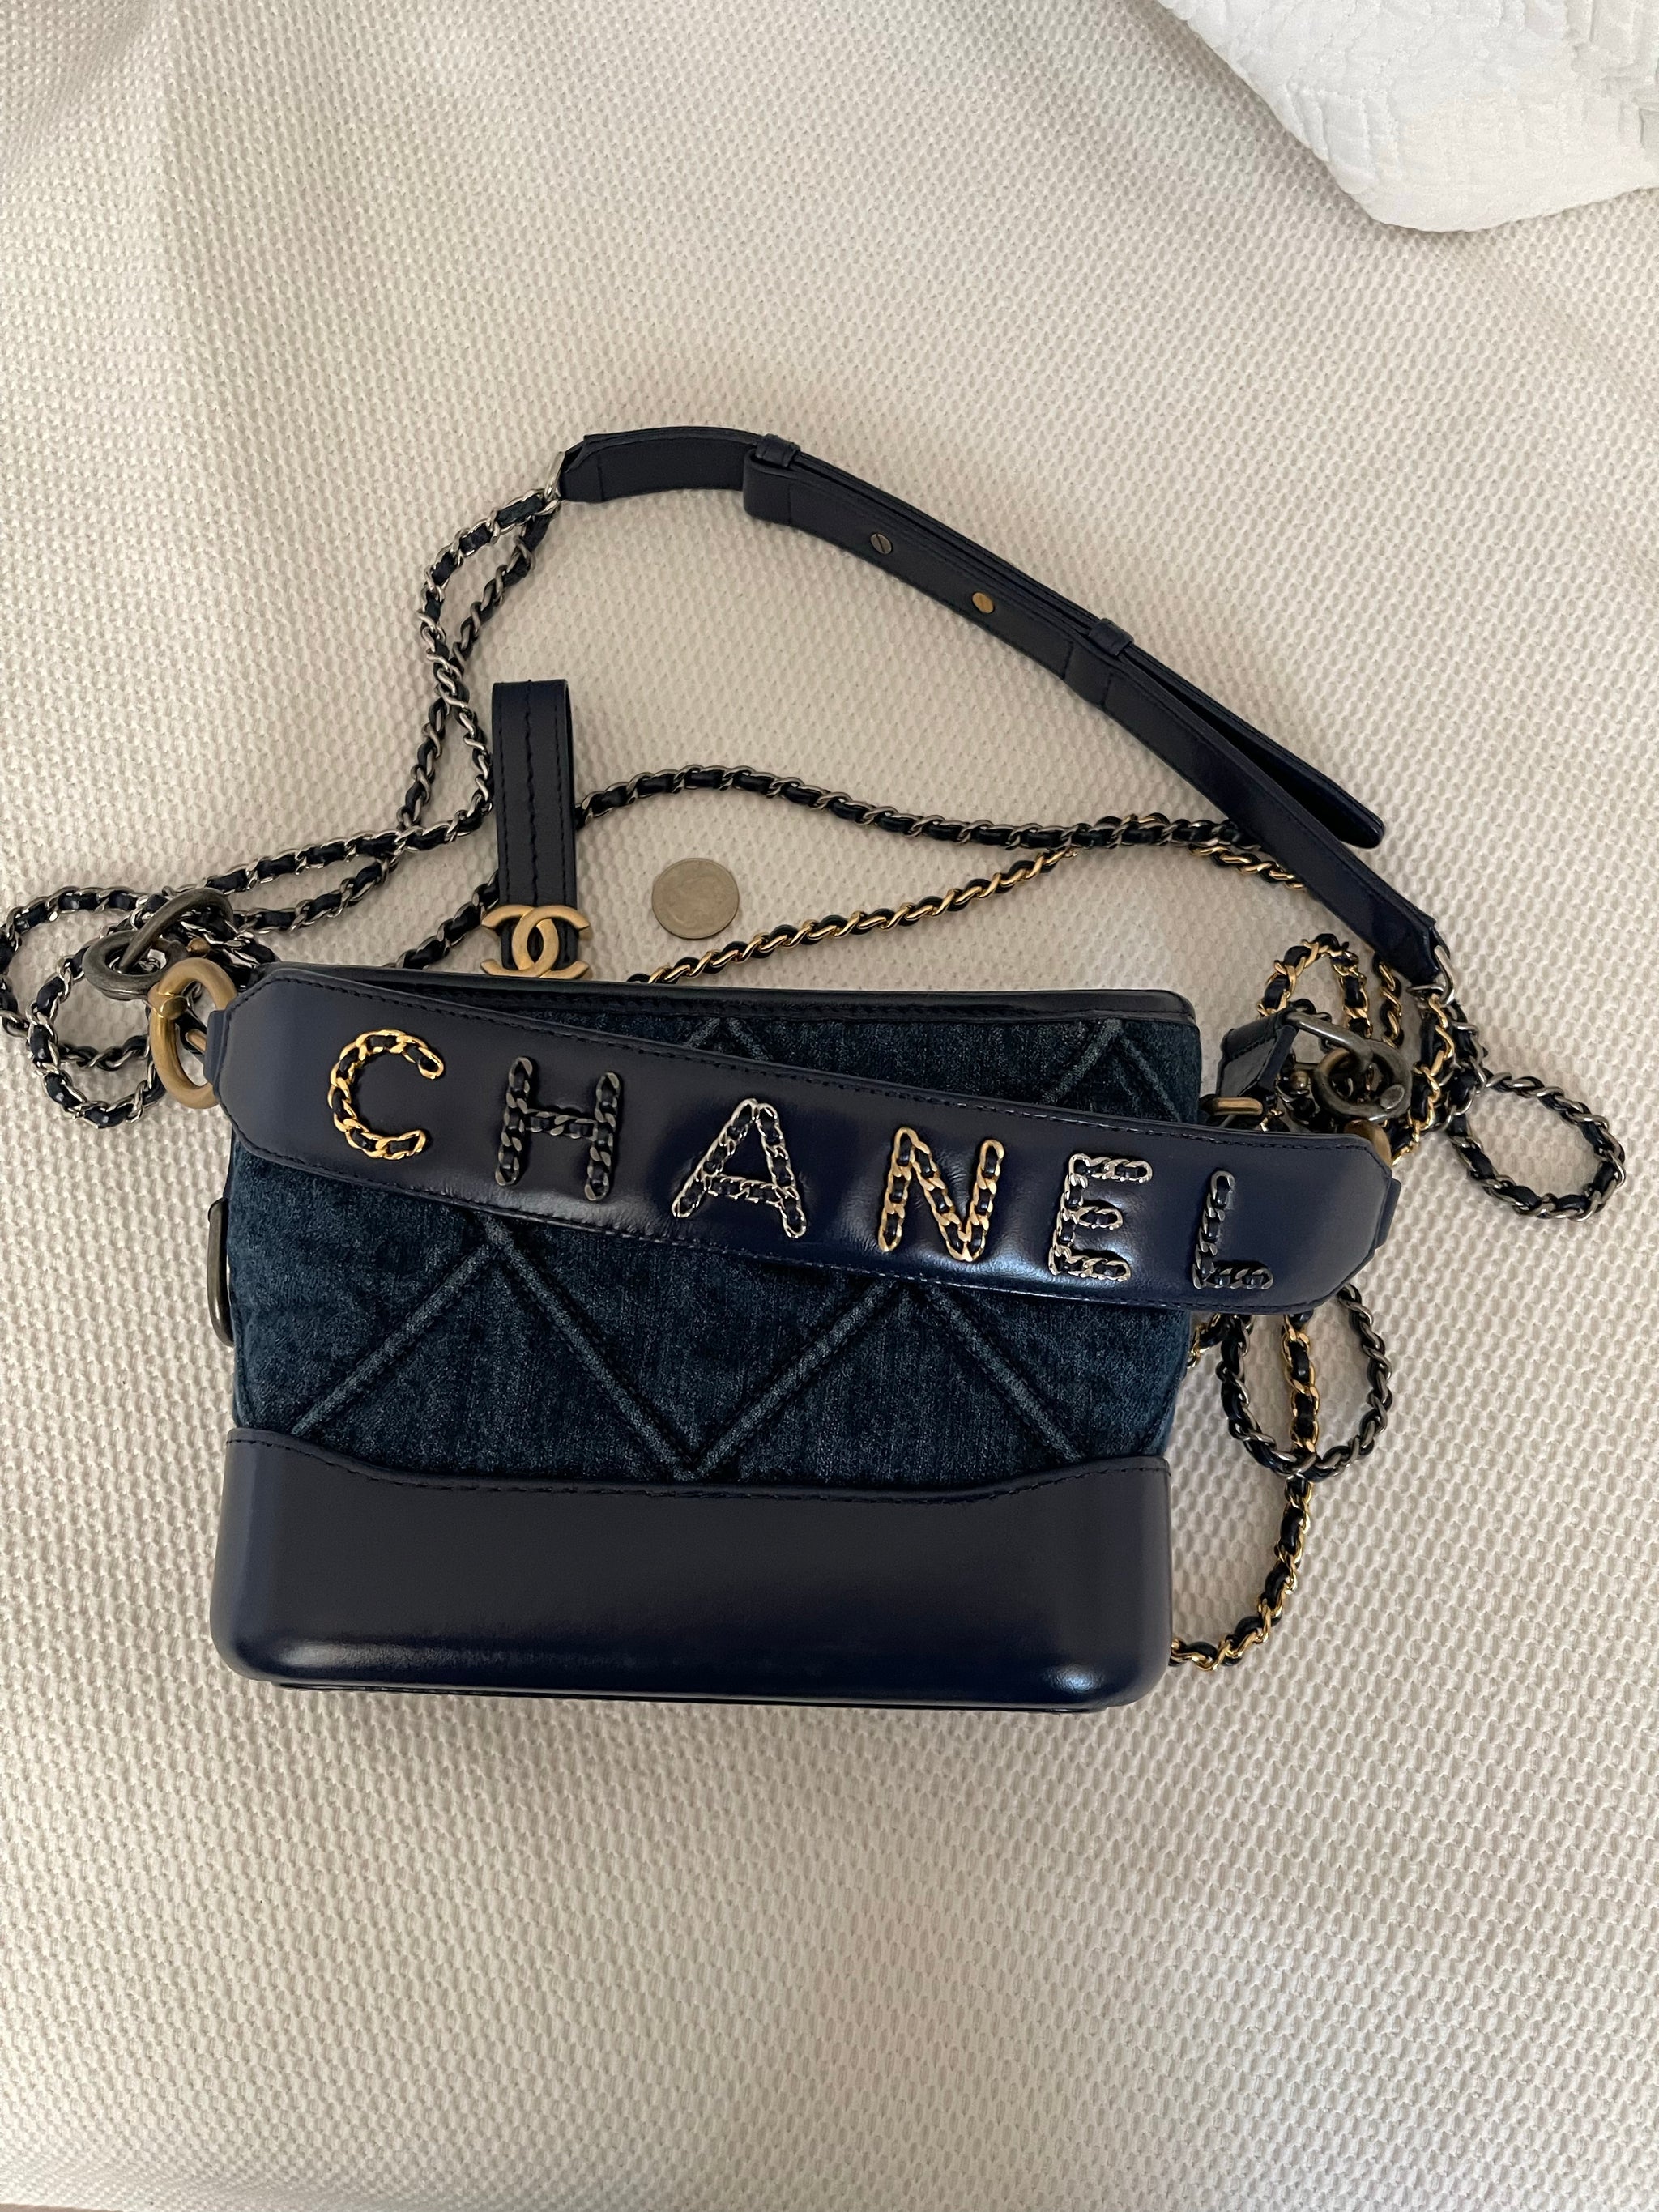 Chanel Gabrielle Bag